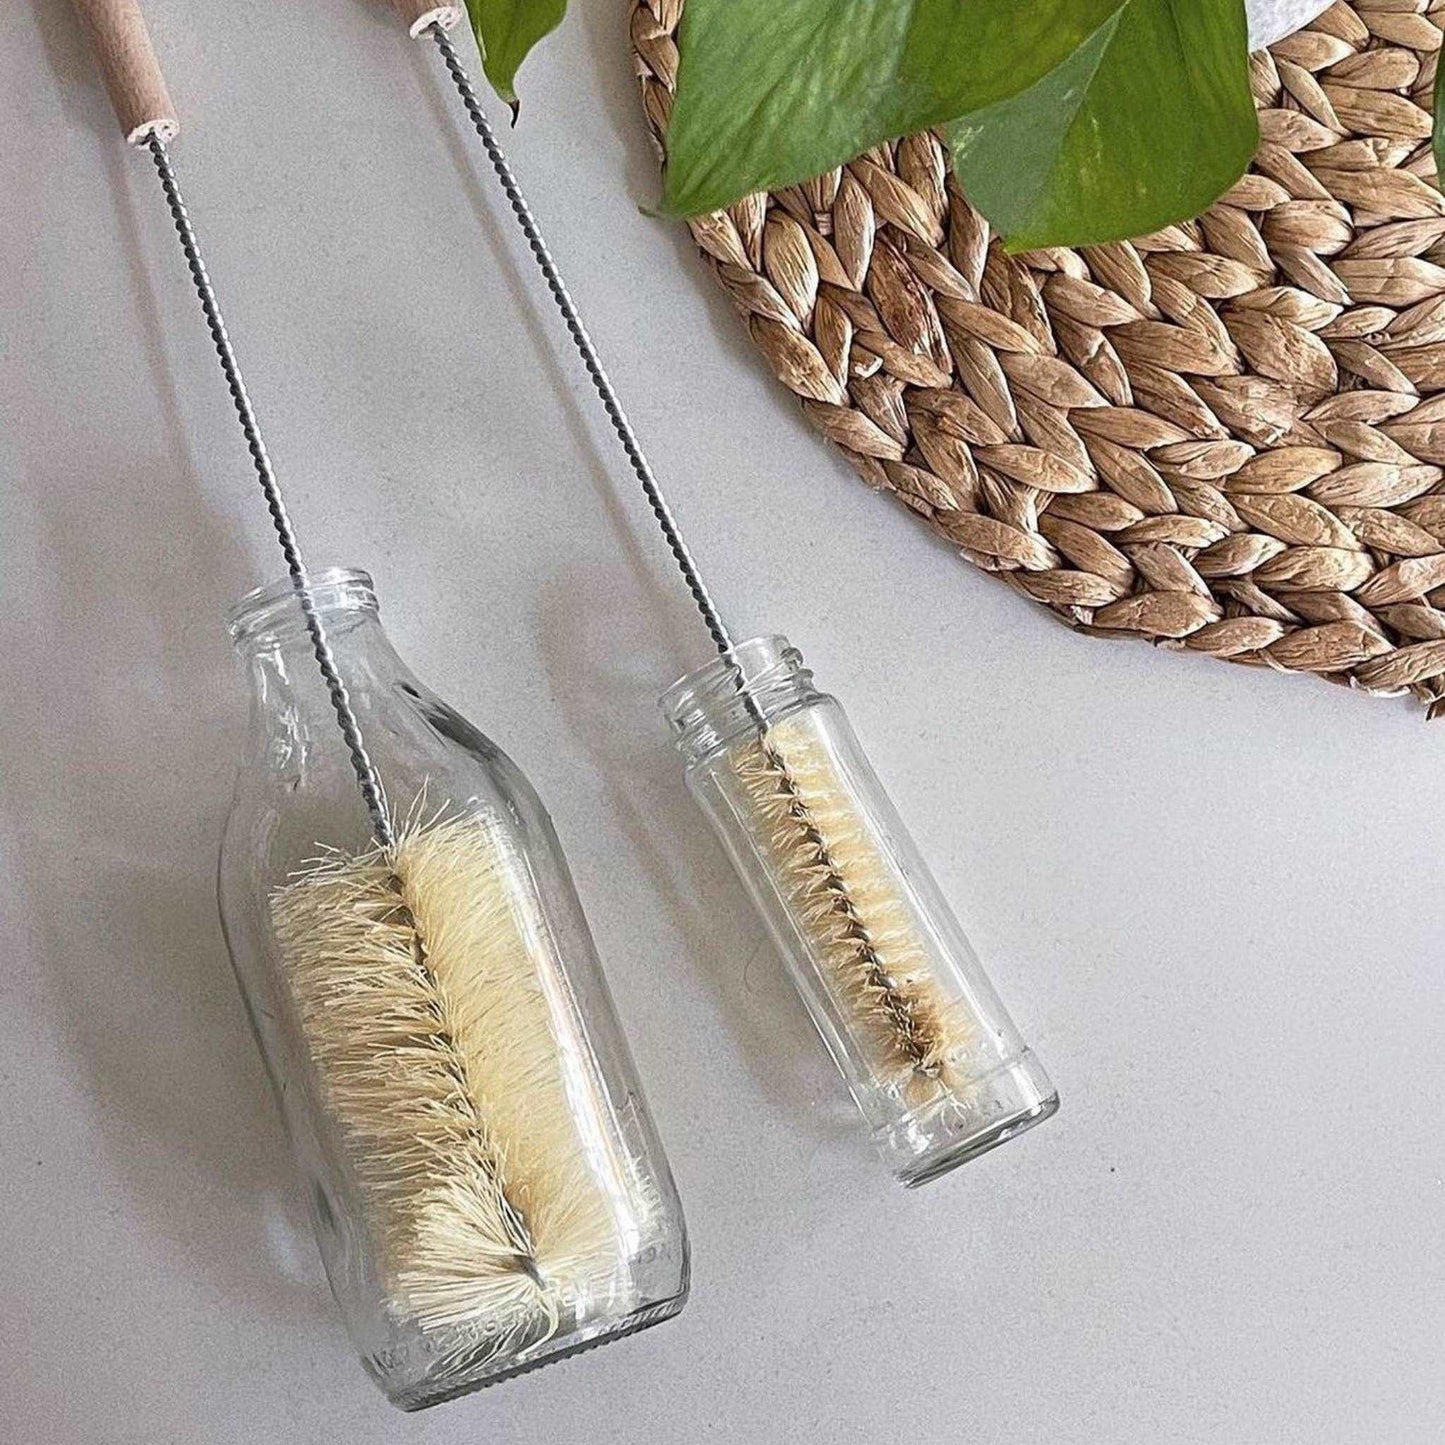 ecoLiving Brushes Vegan Bottle Brush with 100% FSC Wooden Handle - ecoLiving